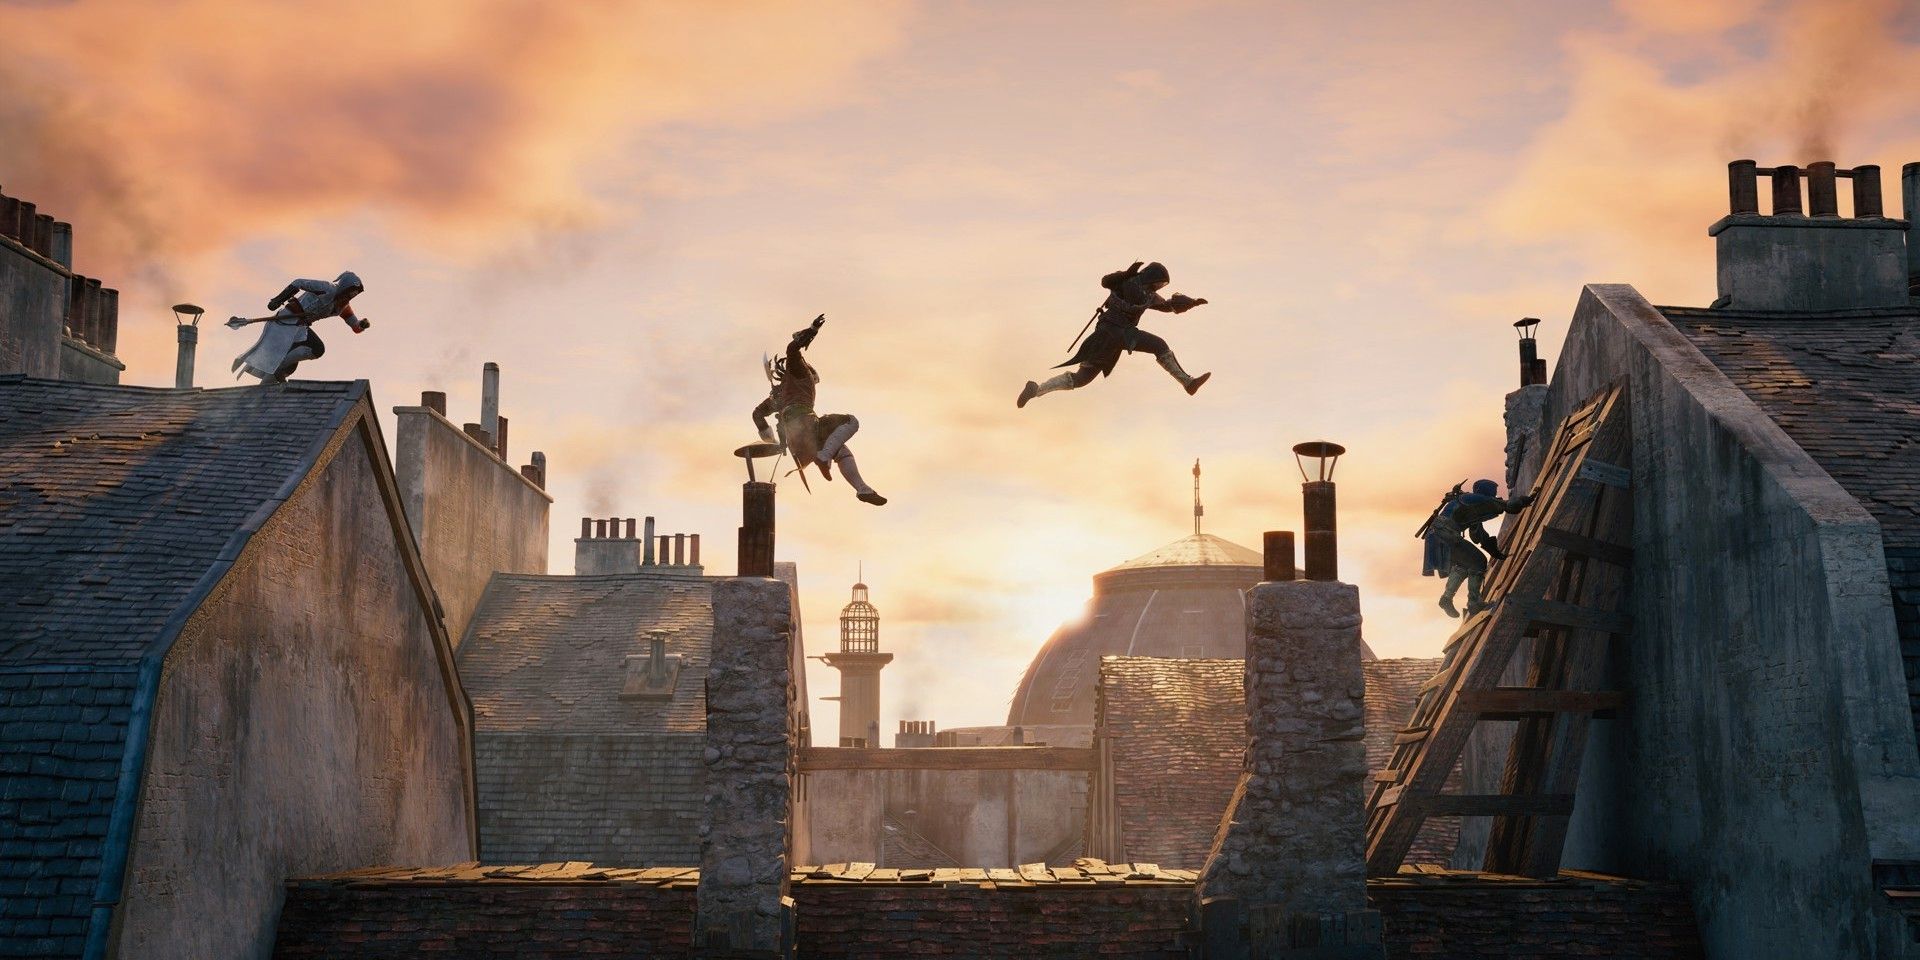 El próximo juego de Assassin's Creed debe traer de vuelta el parkour clásico